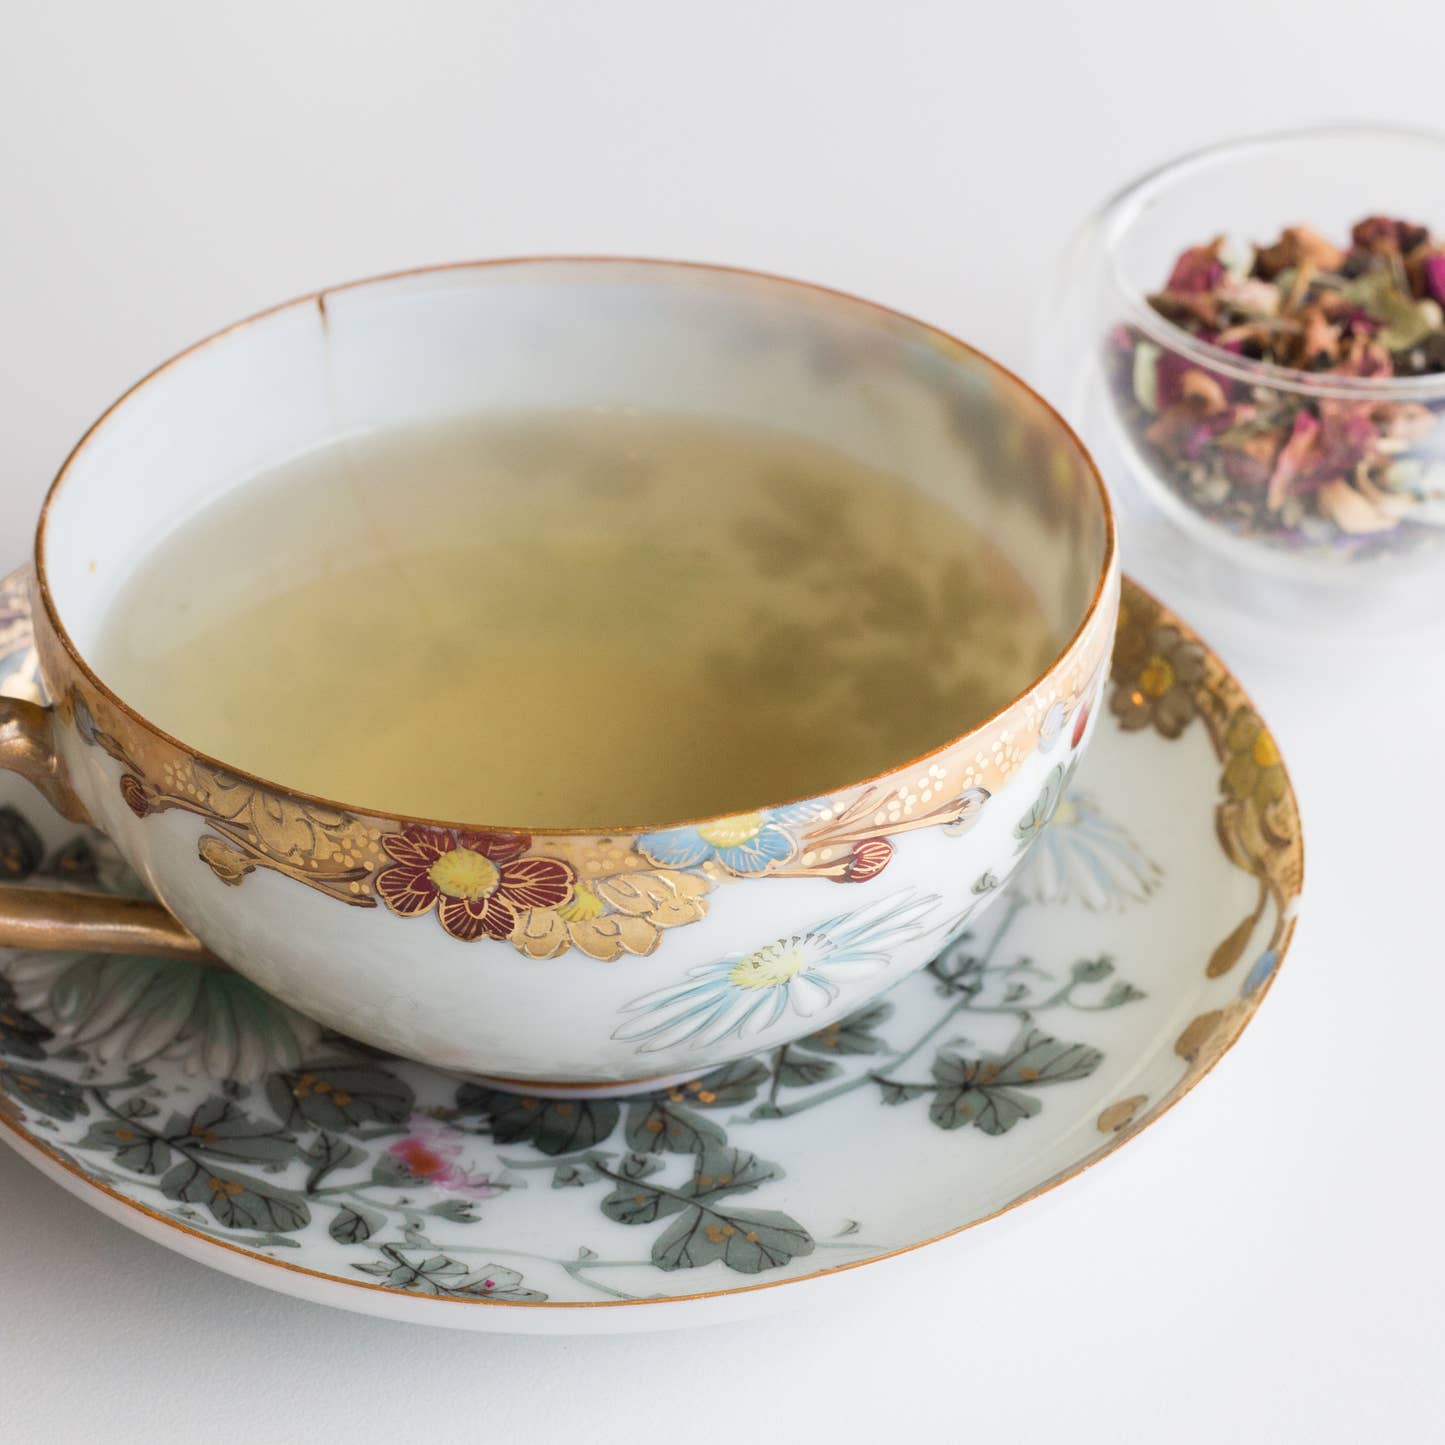 Floral tea cup brewed with Tea Fiori tea